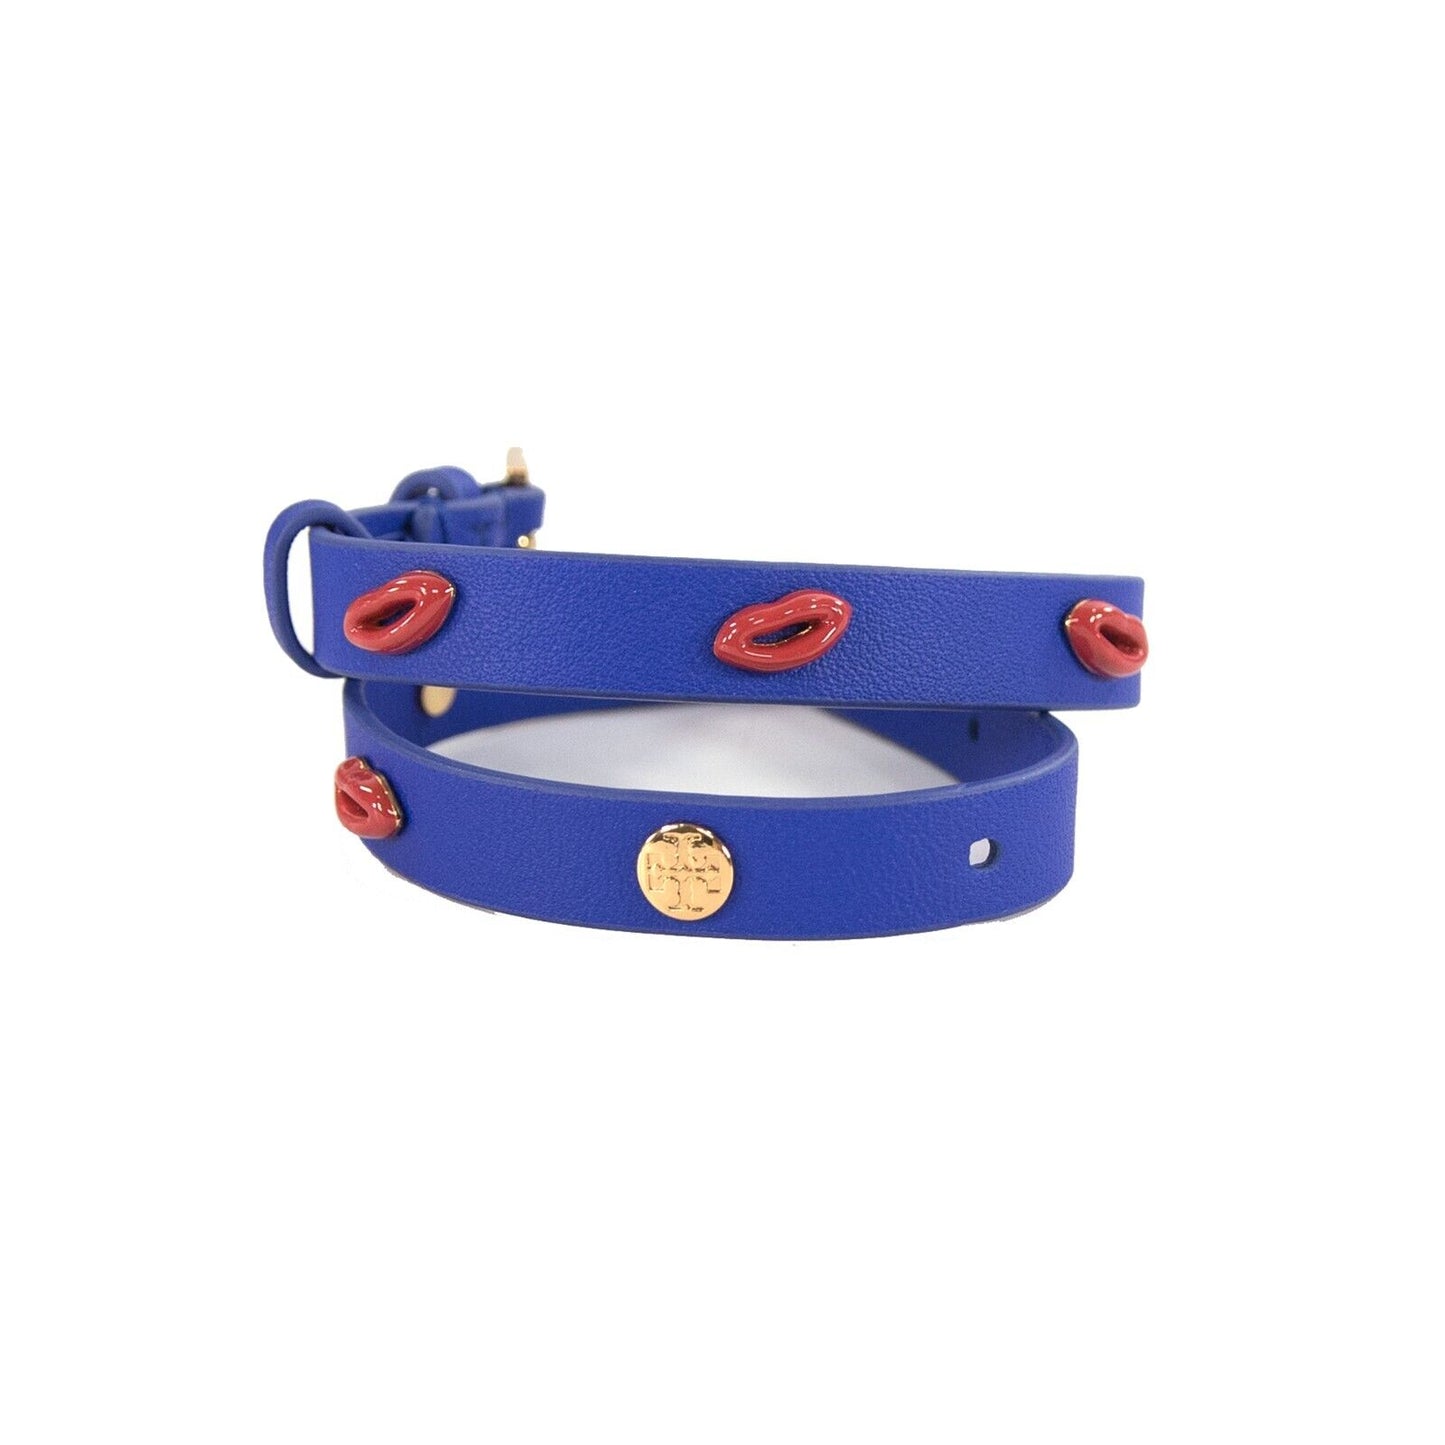 Tory Burch Jewel Blue Lips Leather Wrap Bracelet NWT